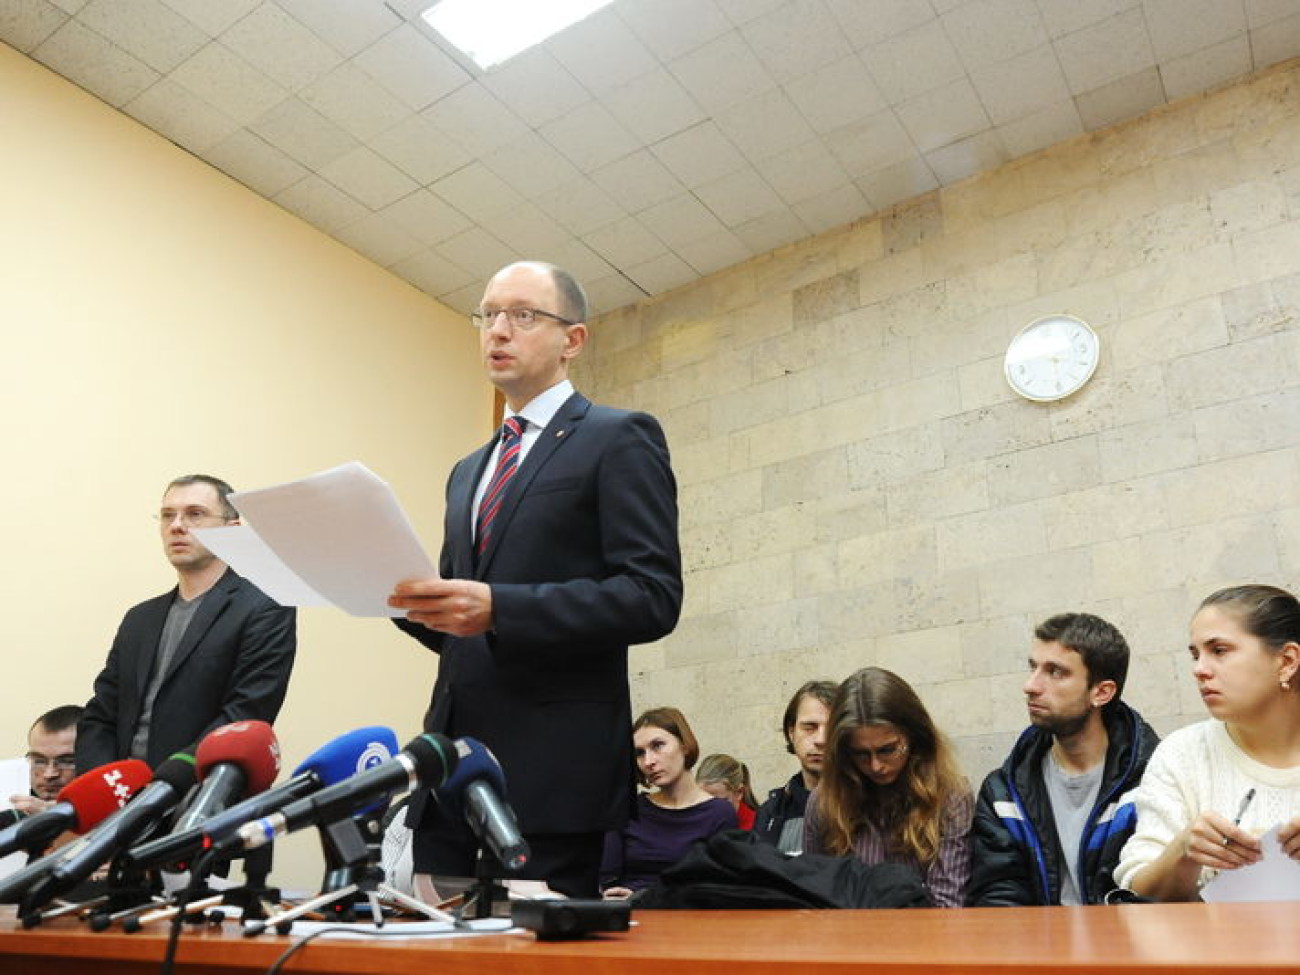 Заседание Киевского апелляционного суда по результатам голосования на 132-м и 197-м округах, 9 ноября 2012г.